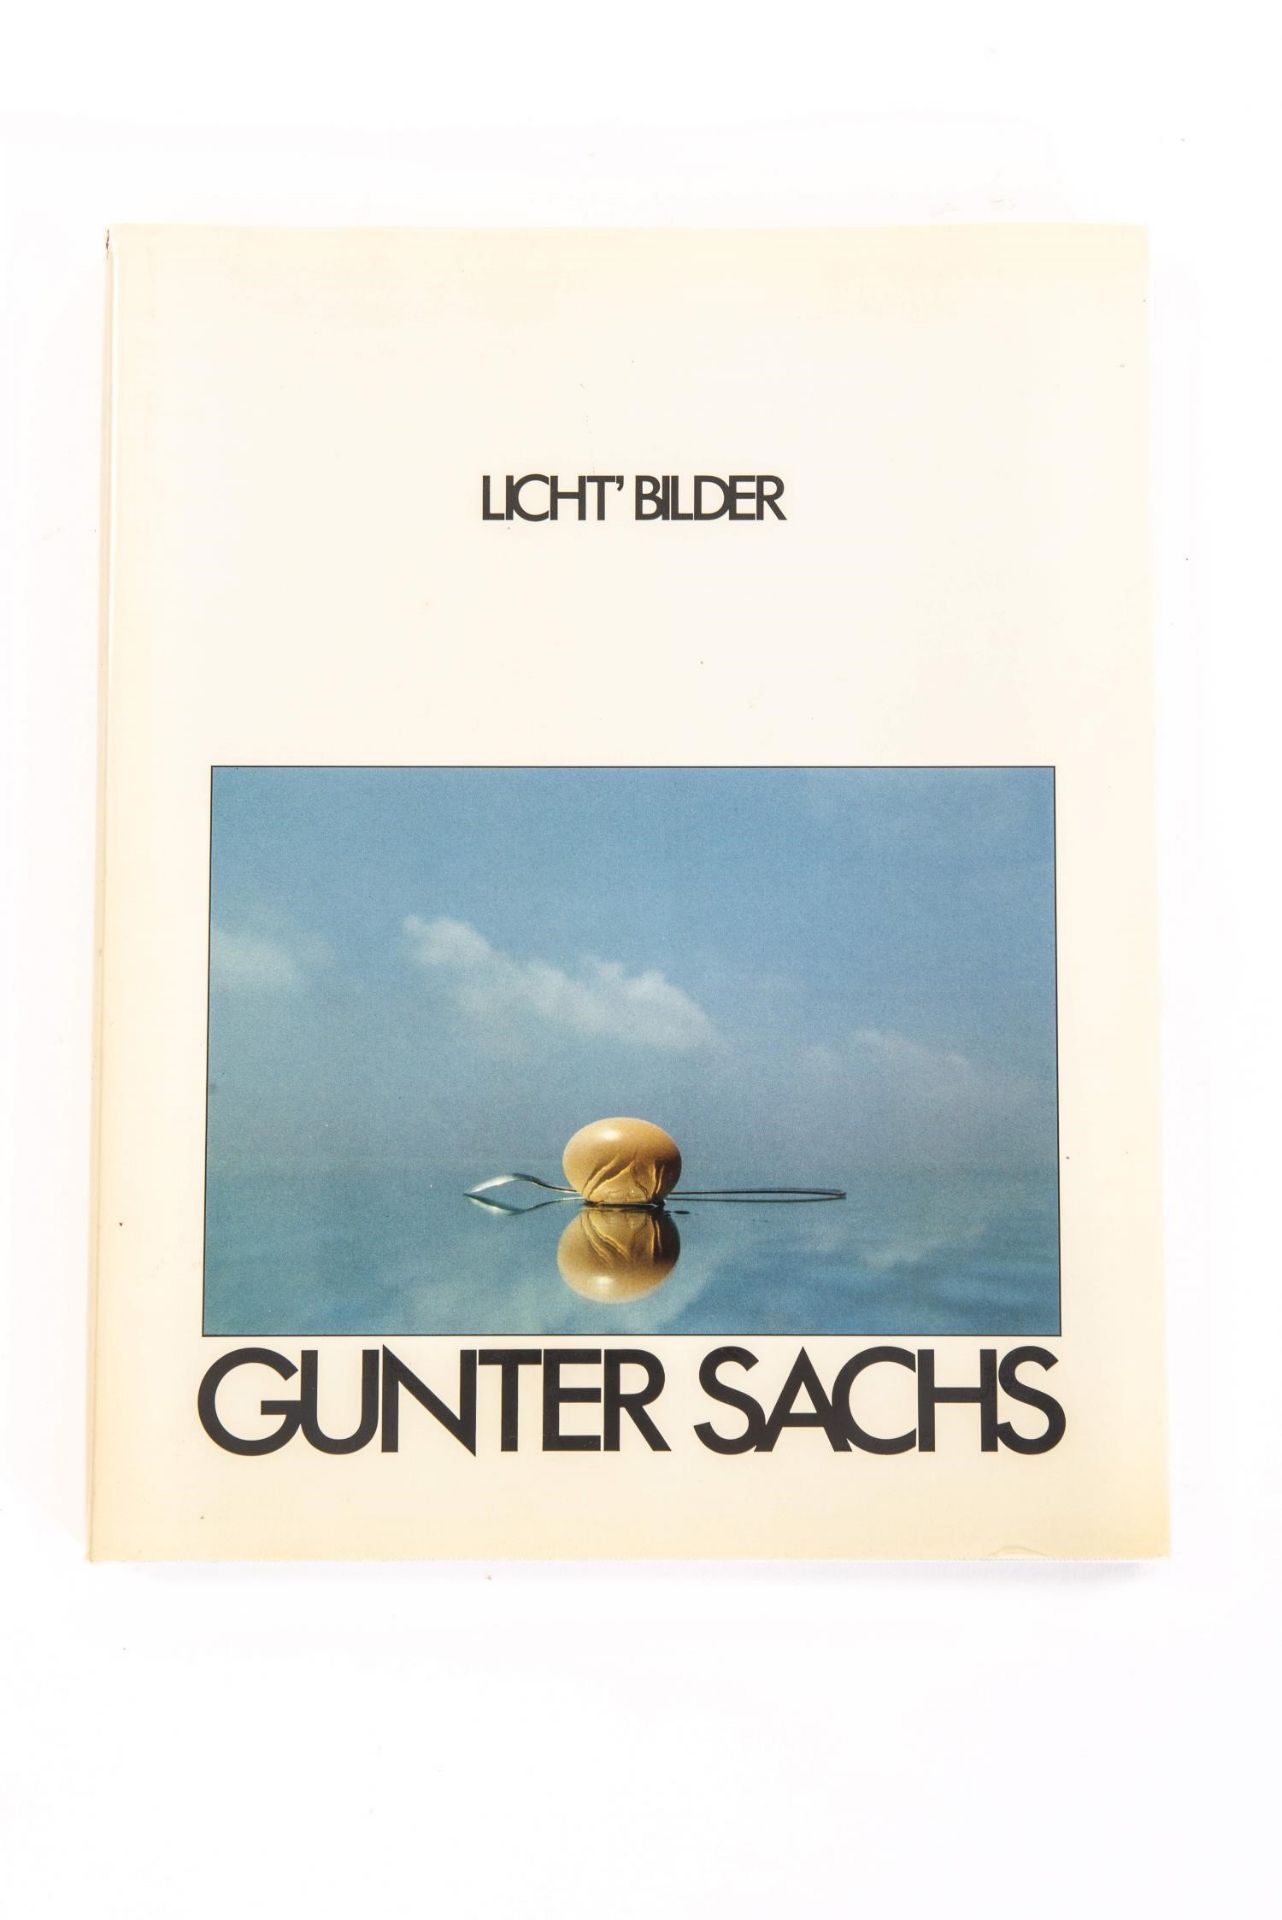 Ensemble de 5 livres de photographies érotiques : - Gunter Sachs, Licht' Bilder, [...] - Bild 10 aus 11